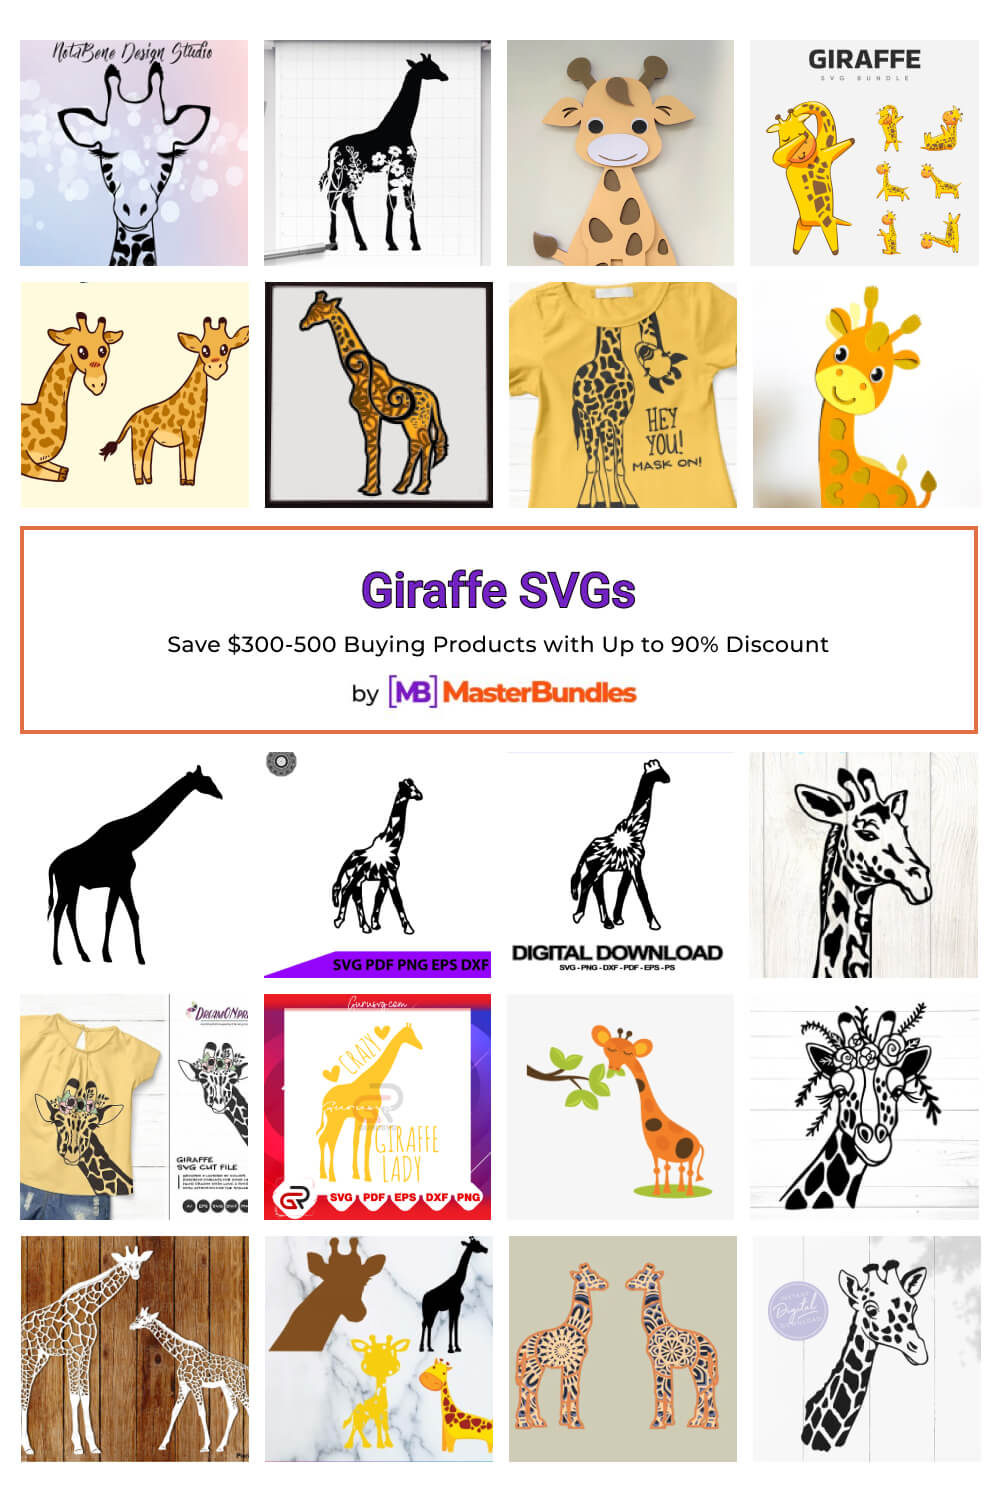 giraffe svgs pinterest image.